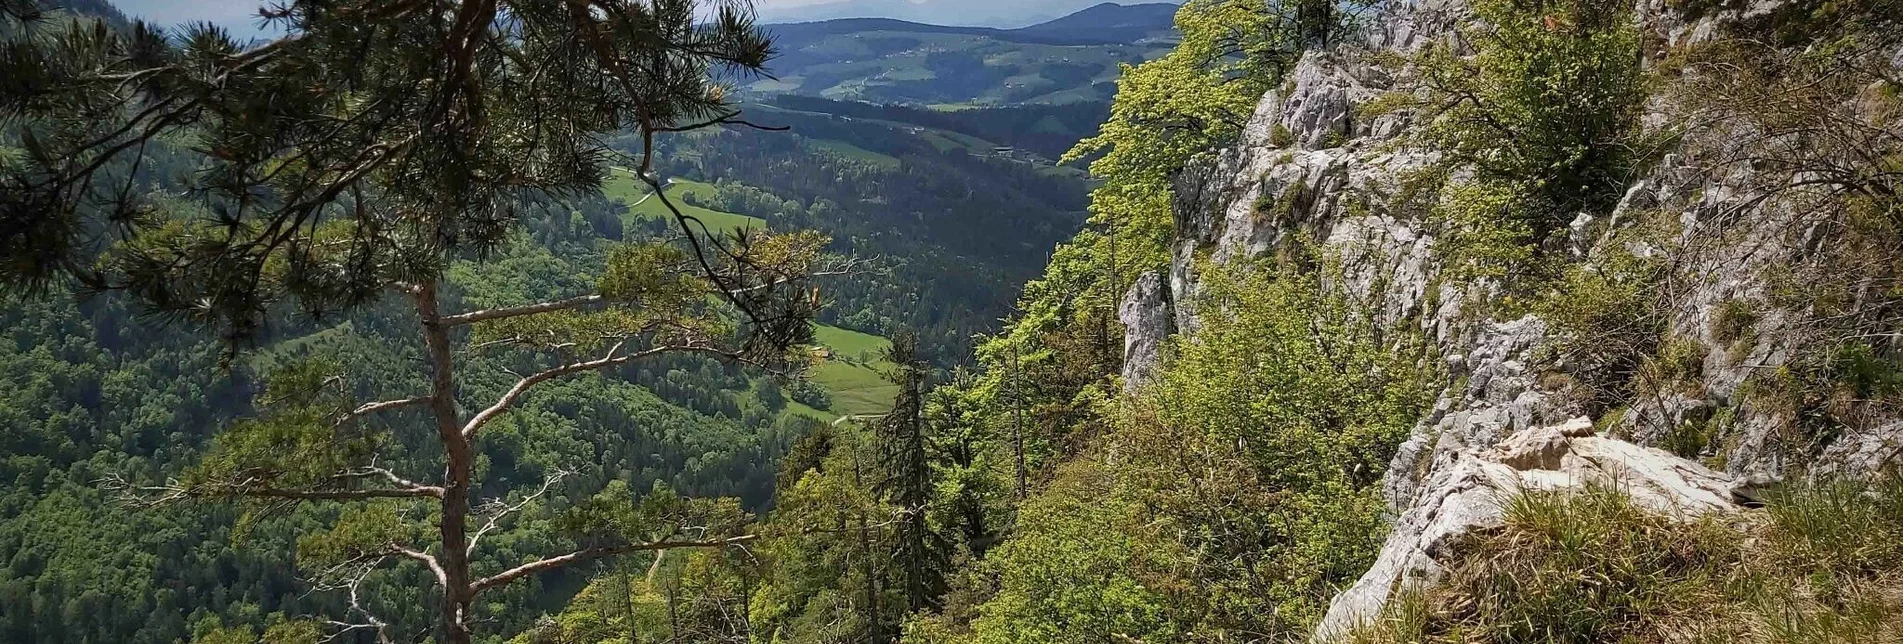 Hiking route Gösser & Sattelberge-Runde, Dürntal/Weiz - Touren-Impression #1 | © Oststeiermark Tourismus